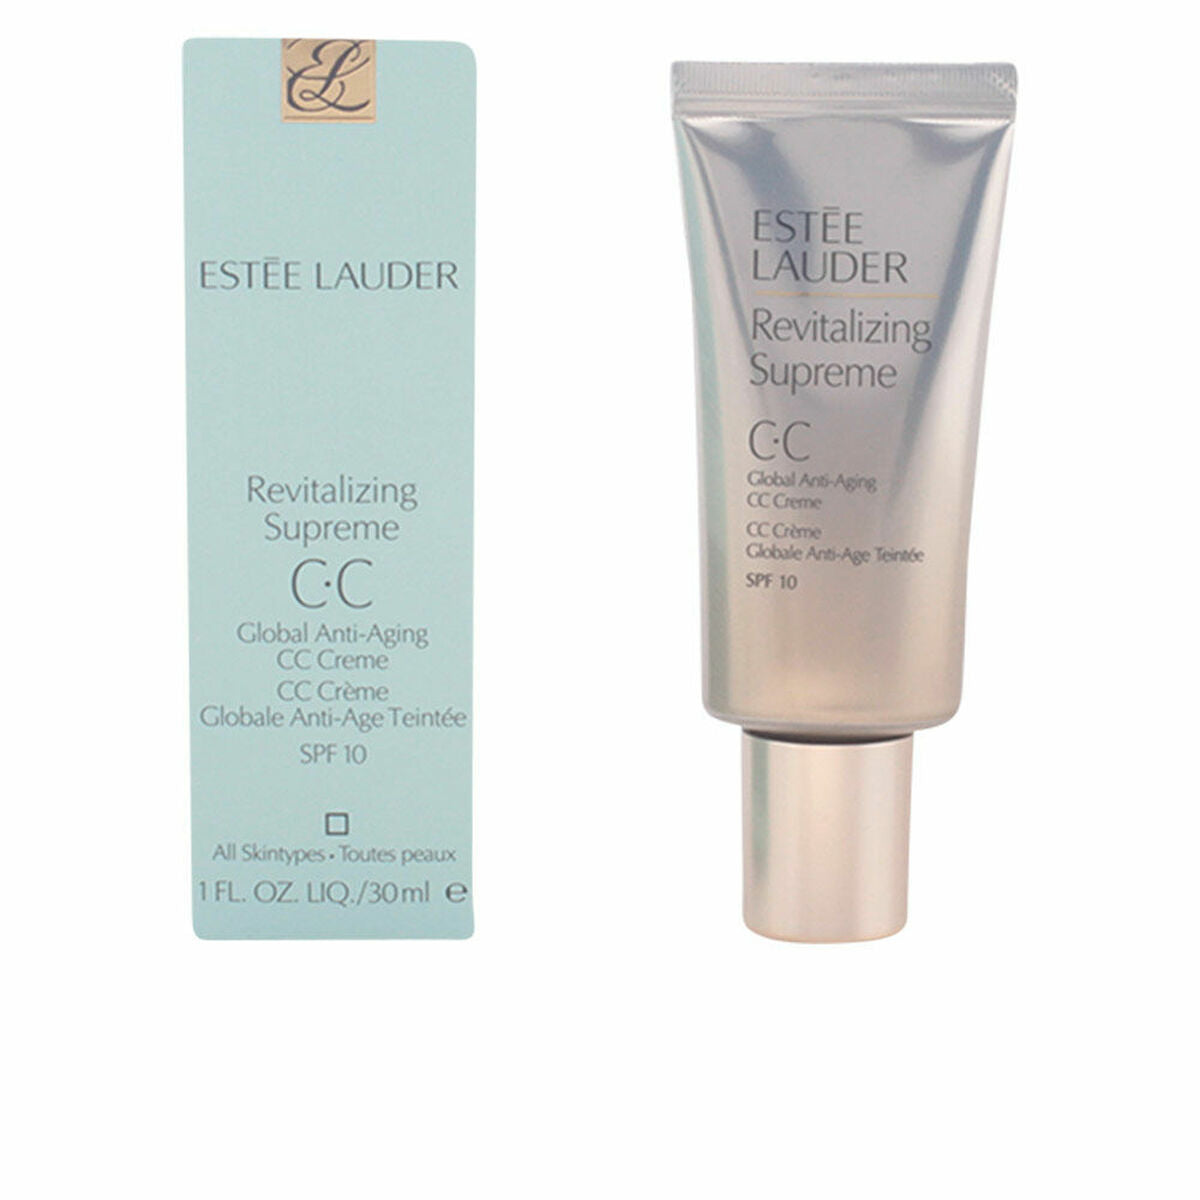 CC Cream Estee Lauder Revitalizing Supreme Cc Anti-ageing Spf 10 30 ml-0